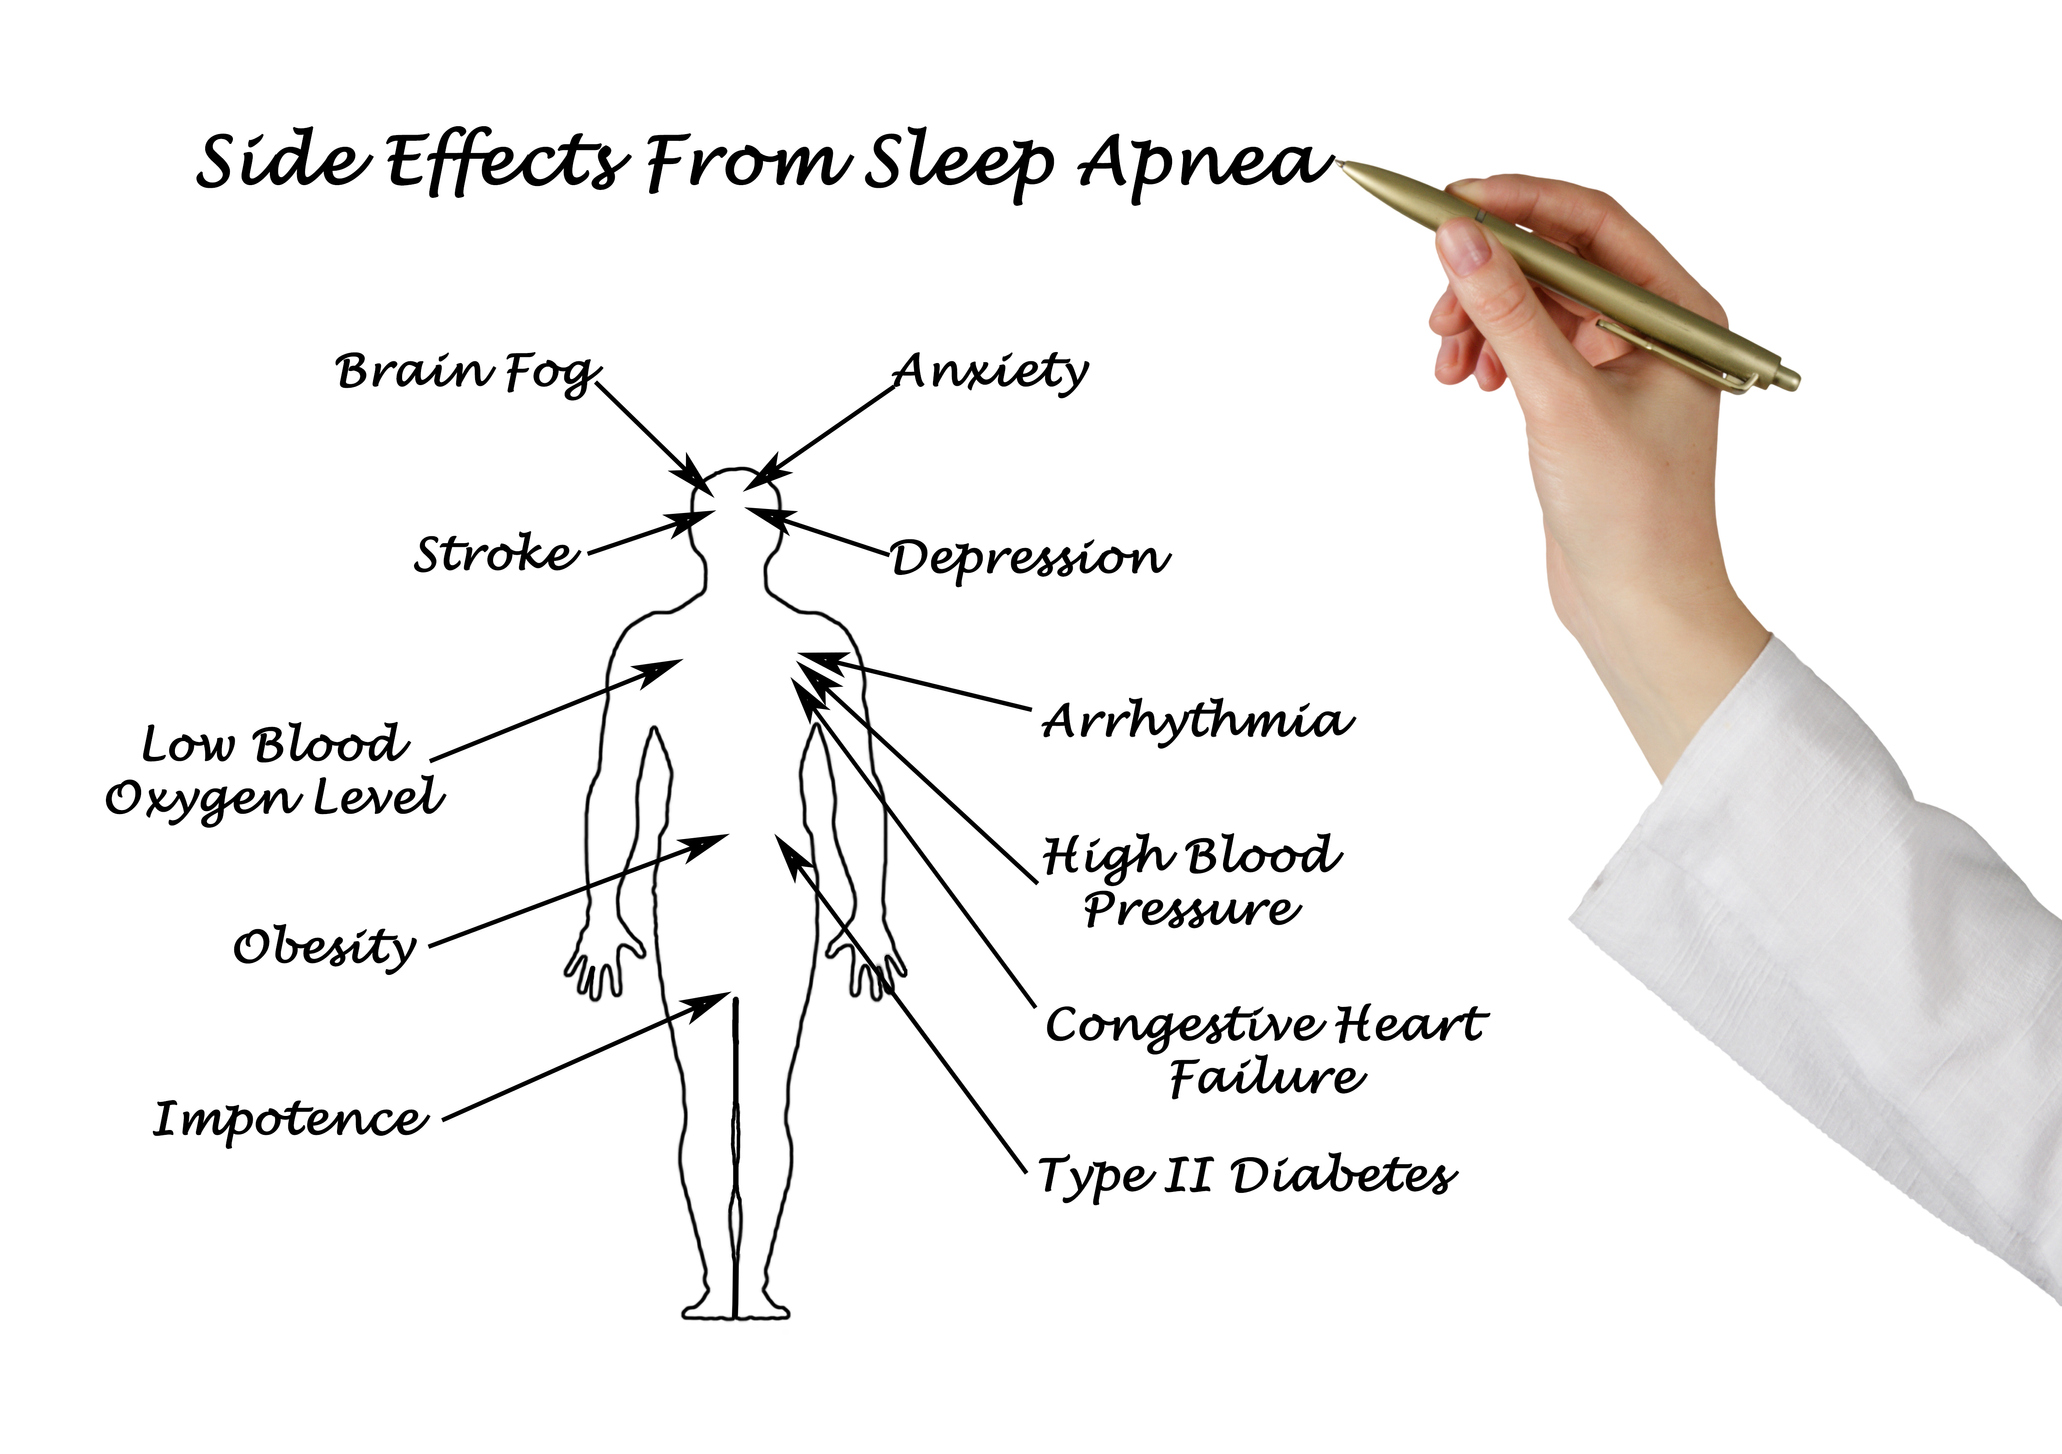 Diagram showing Side Effects From Sleep Apnea